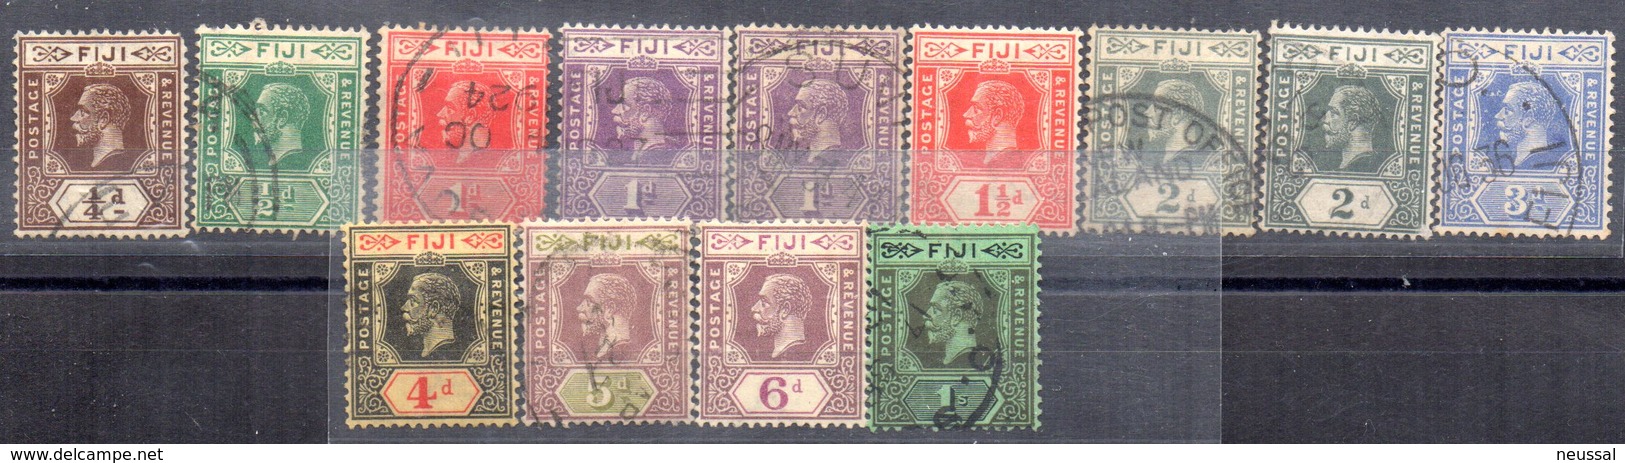 Sellos  Nº 83/93  Fiji - Fiji (...-1970)